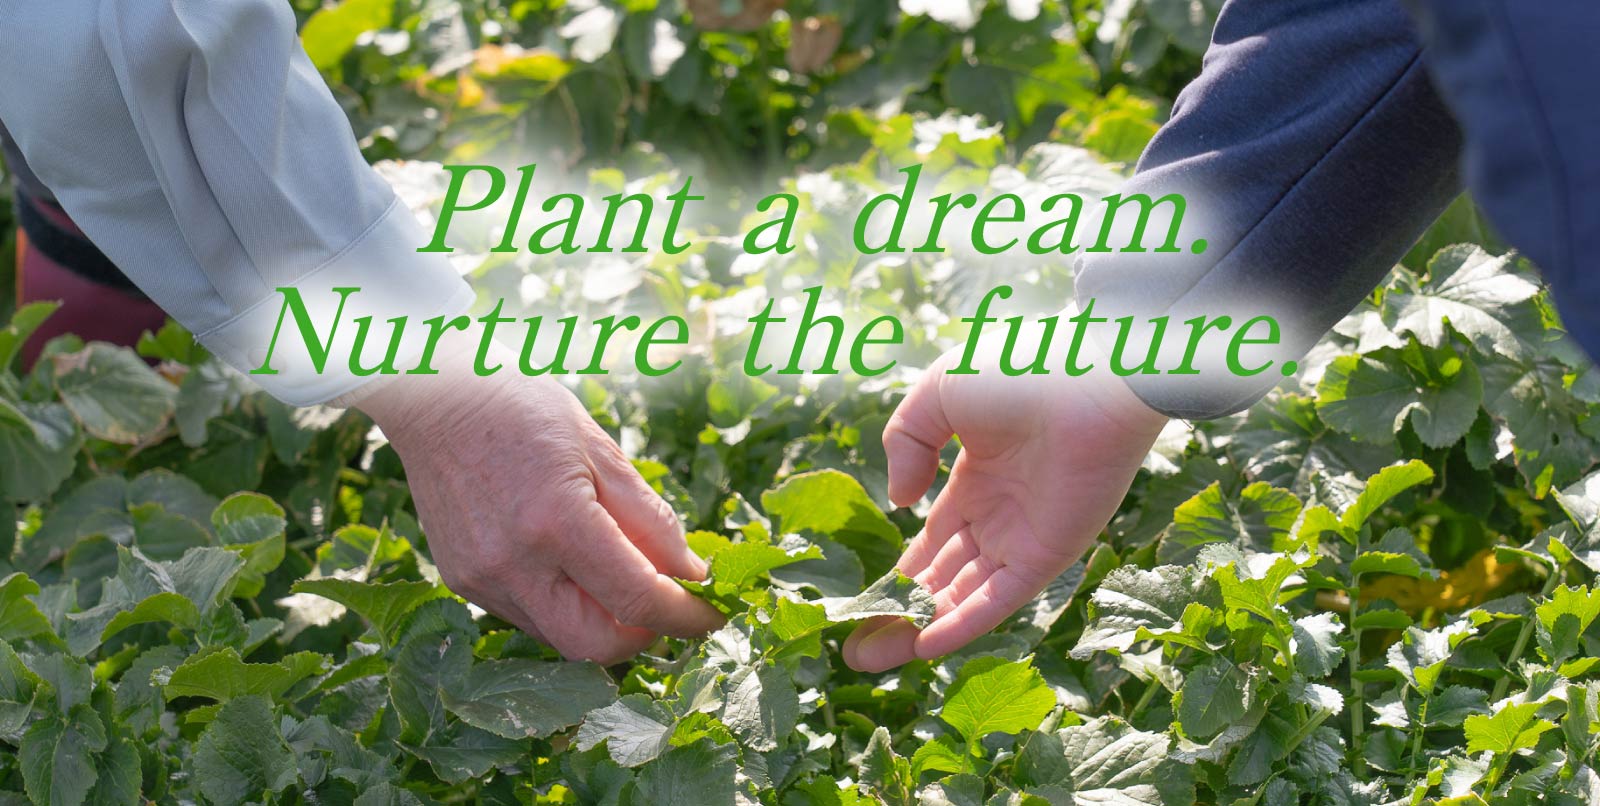 Plant a dream. Nurture the future.